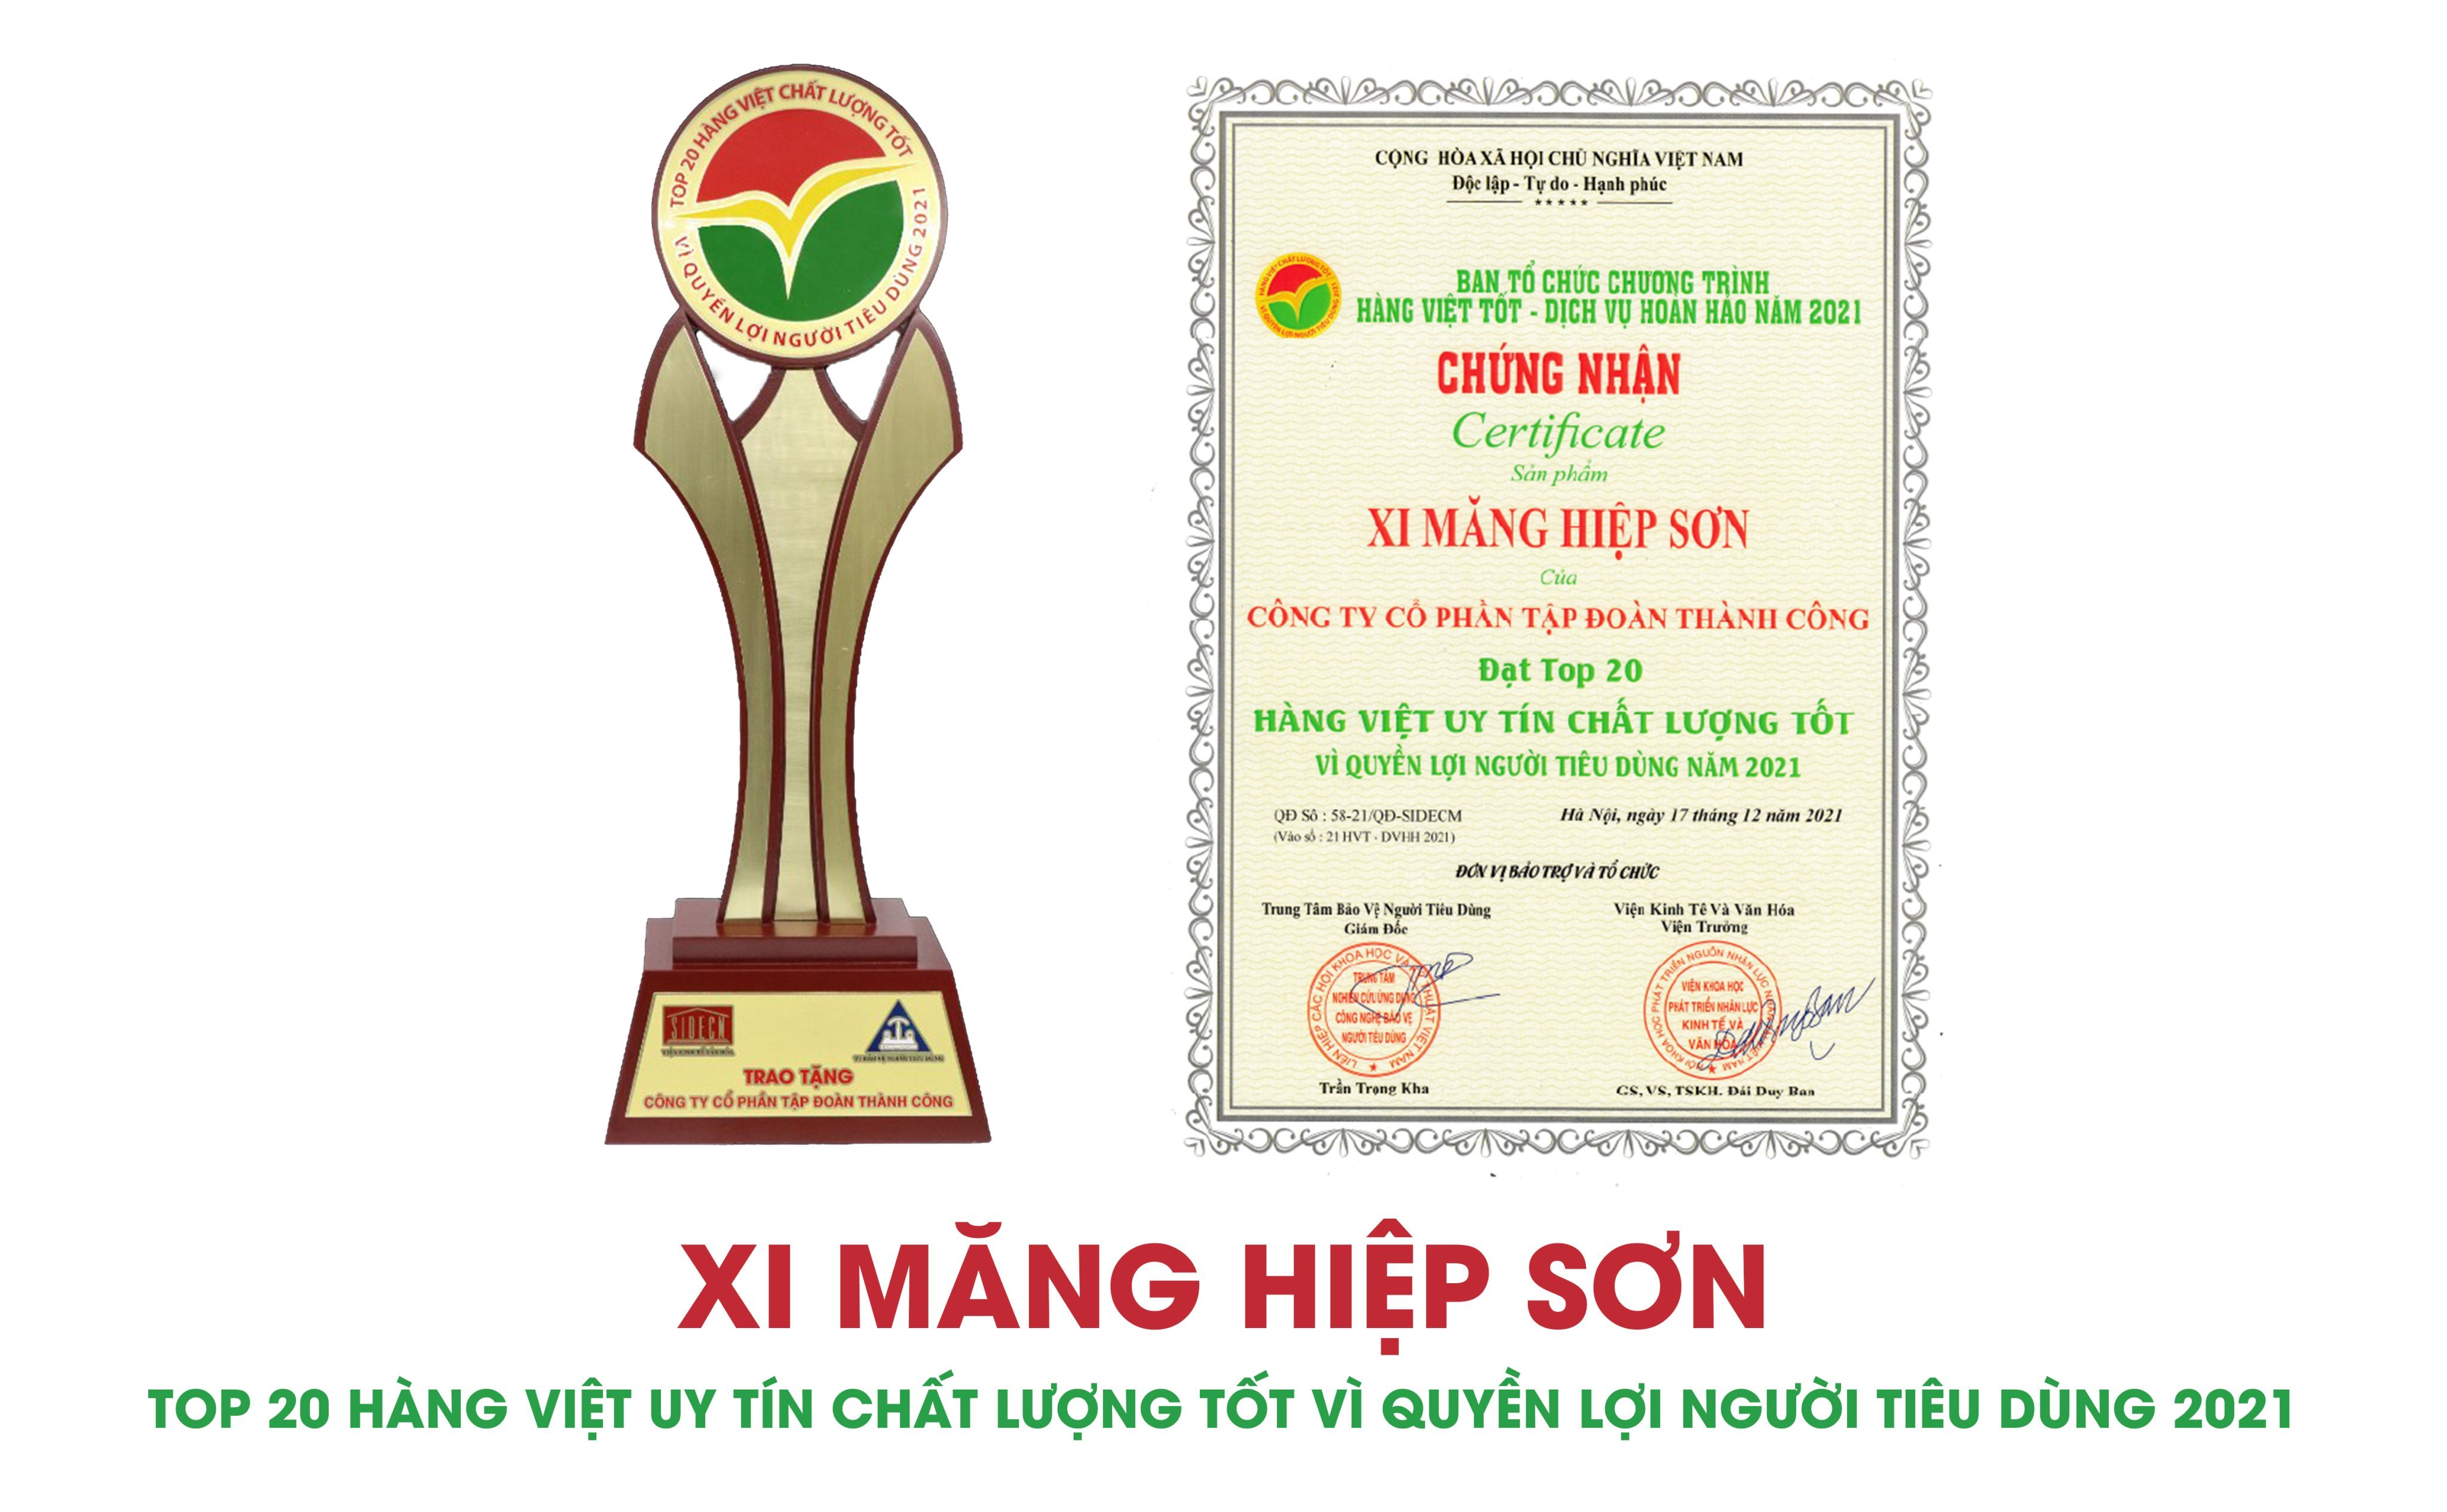 Xi măng Hiệp Sơn Top 20 Hàng Việt uy tín chất lượng tốt